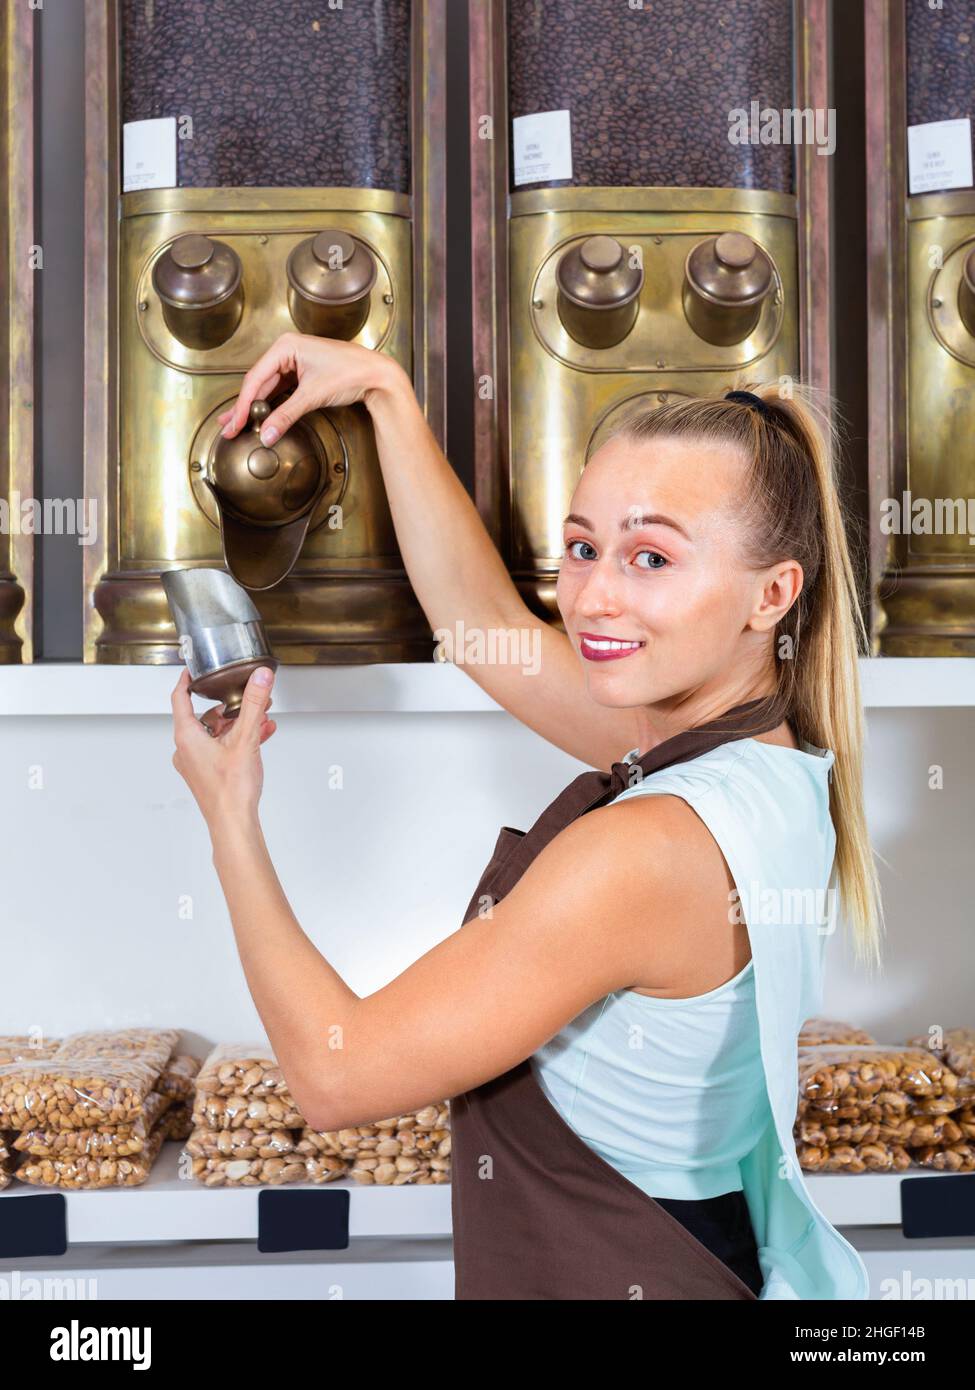 La femme vendeuse verse du café dans les récipients de la boutique alimentacion. Banque D'Images